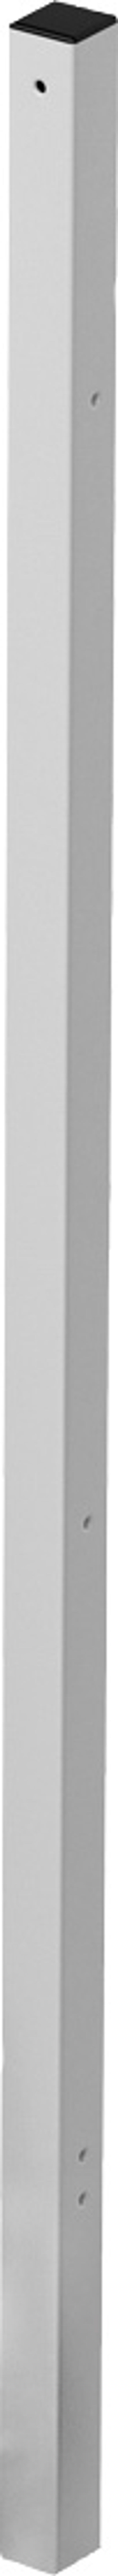 Bosch-vertikales-Montagegestell-Stuecklistenkomponente-Montagestaender-8737907215 gallery number 1